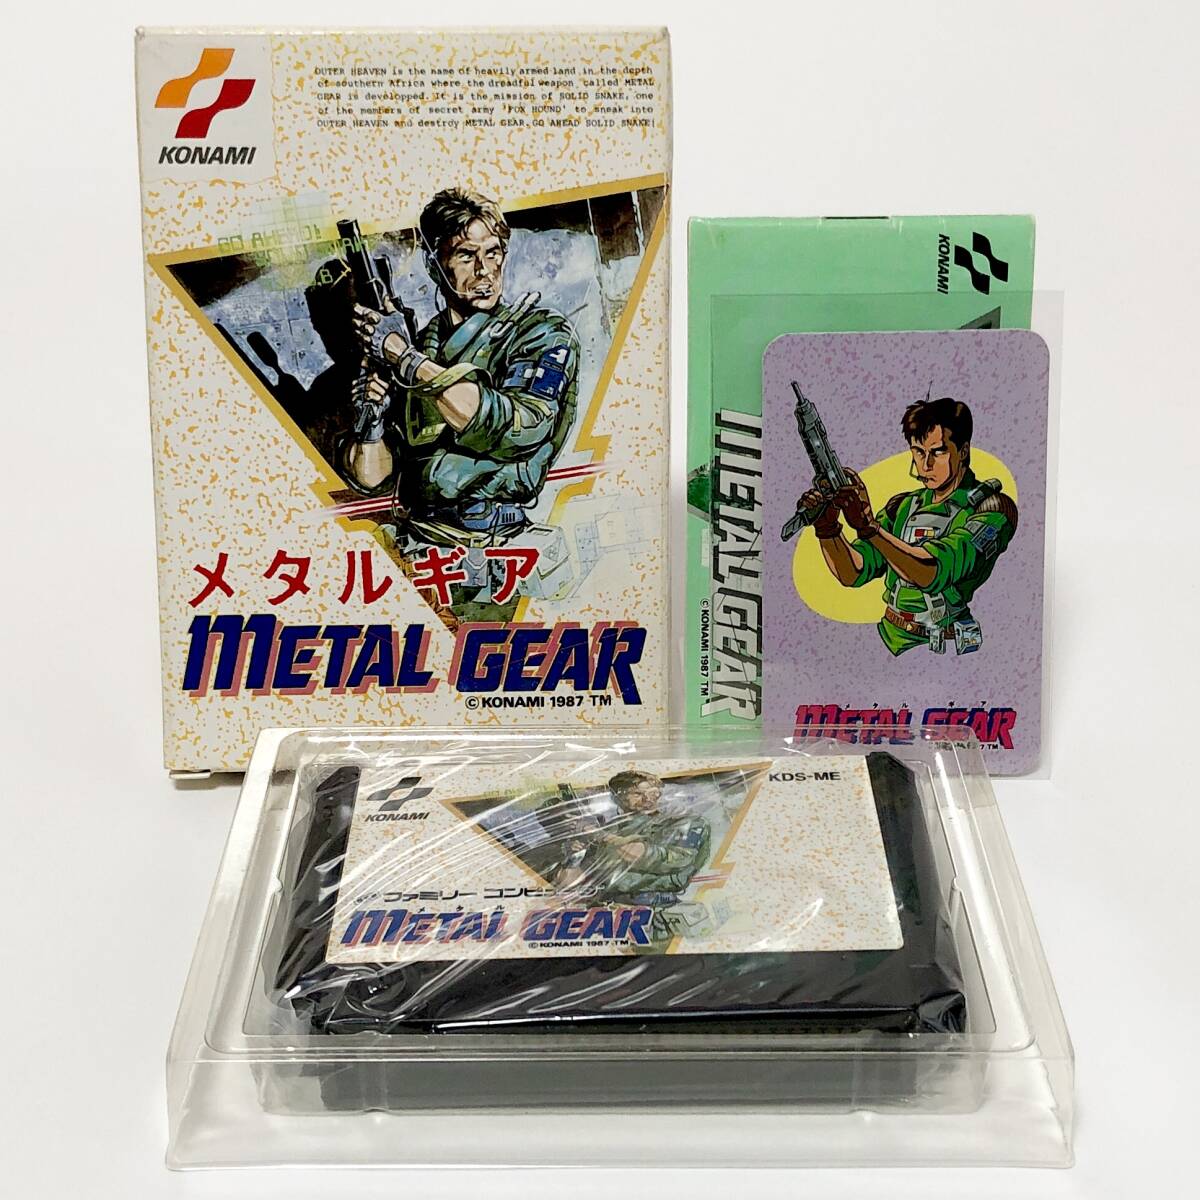 ファミコン メタルギア 箱説付き キャラカード付き 痛みあり 動作確認済み コナミ Nintendo Famicom Metal Gear CIB Tested Konami